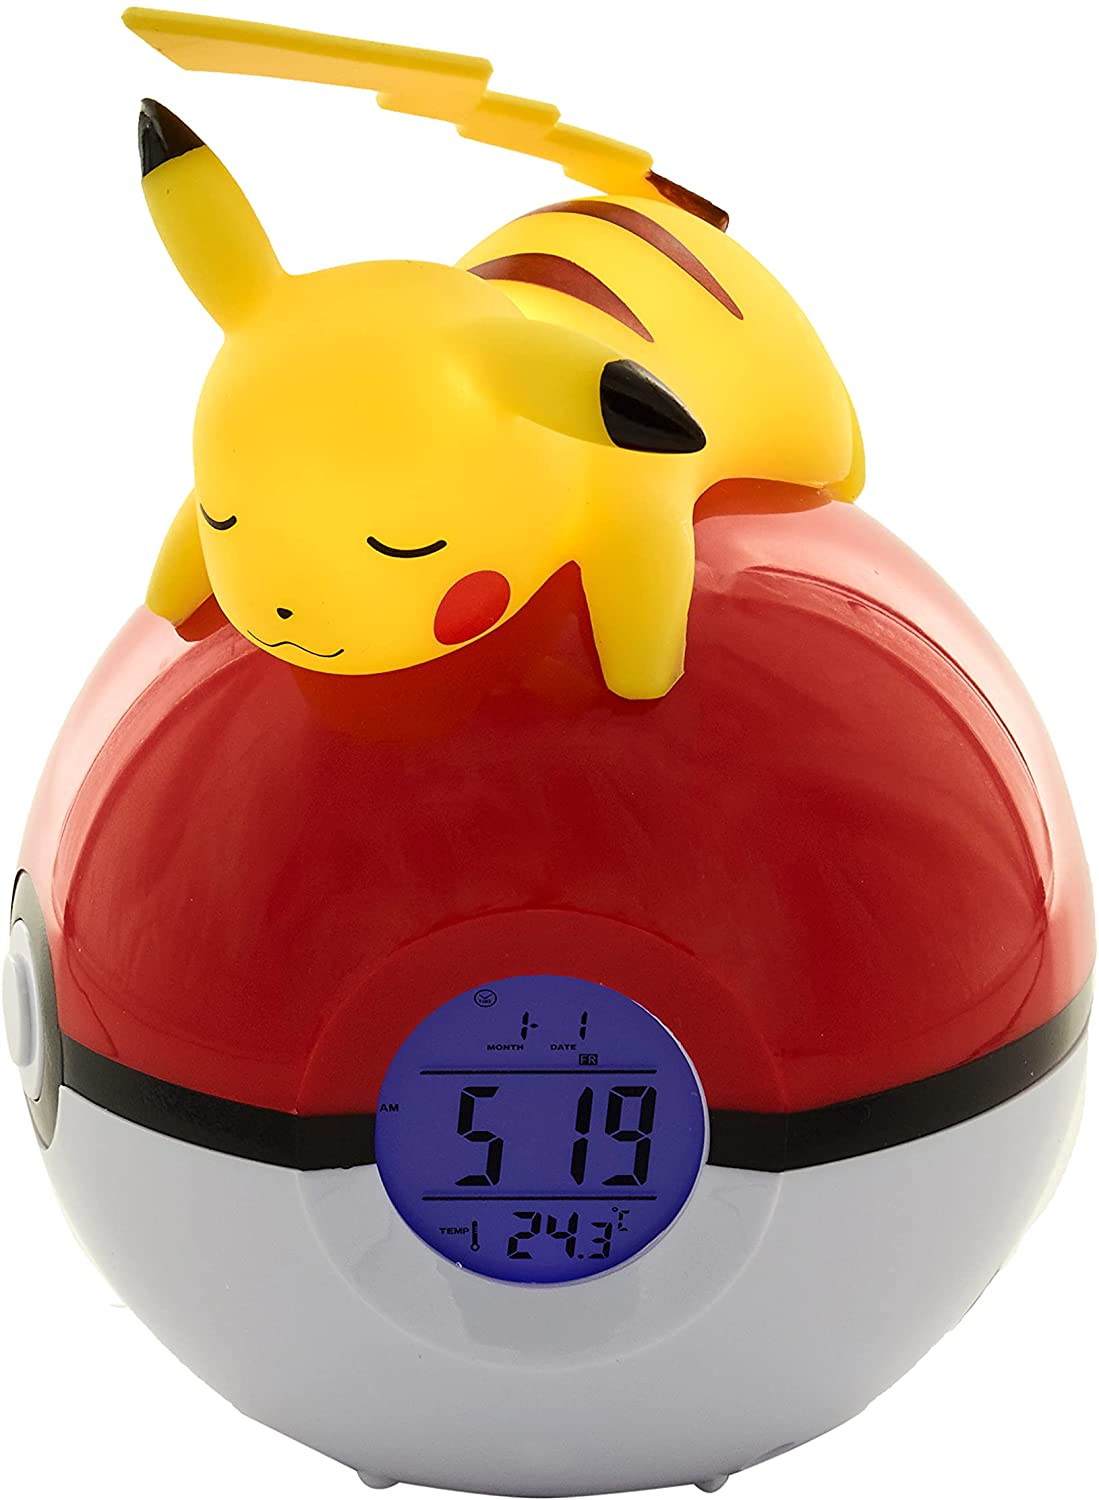 Radio despertador Pokémon Pikachu